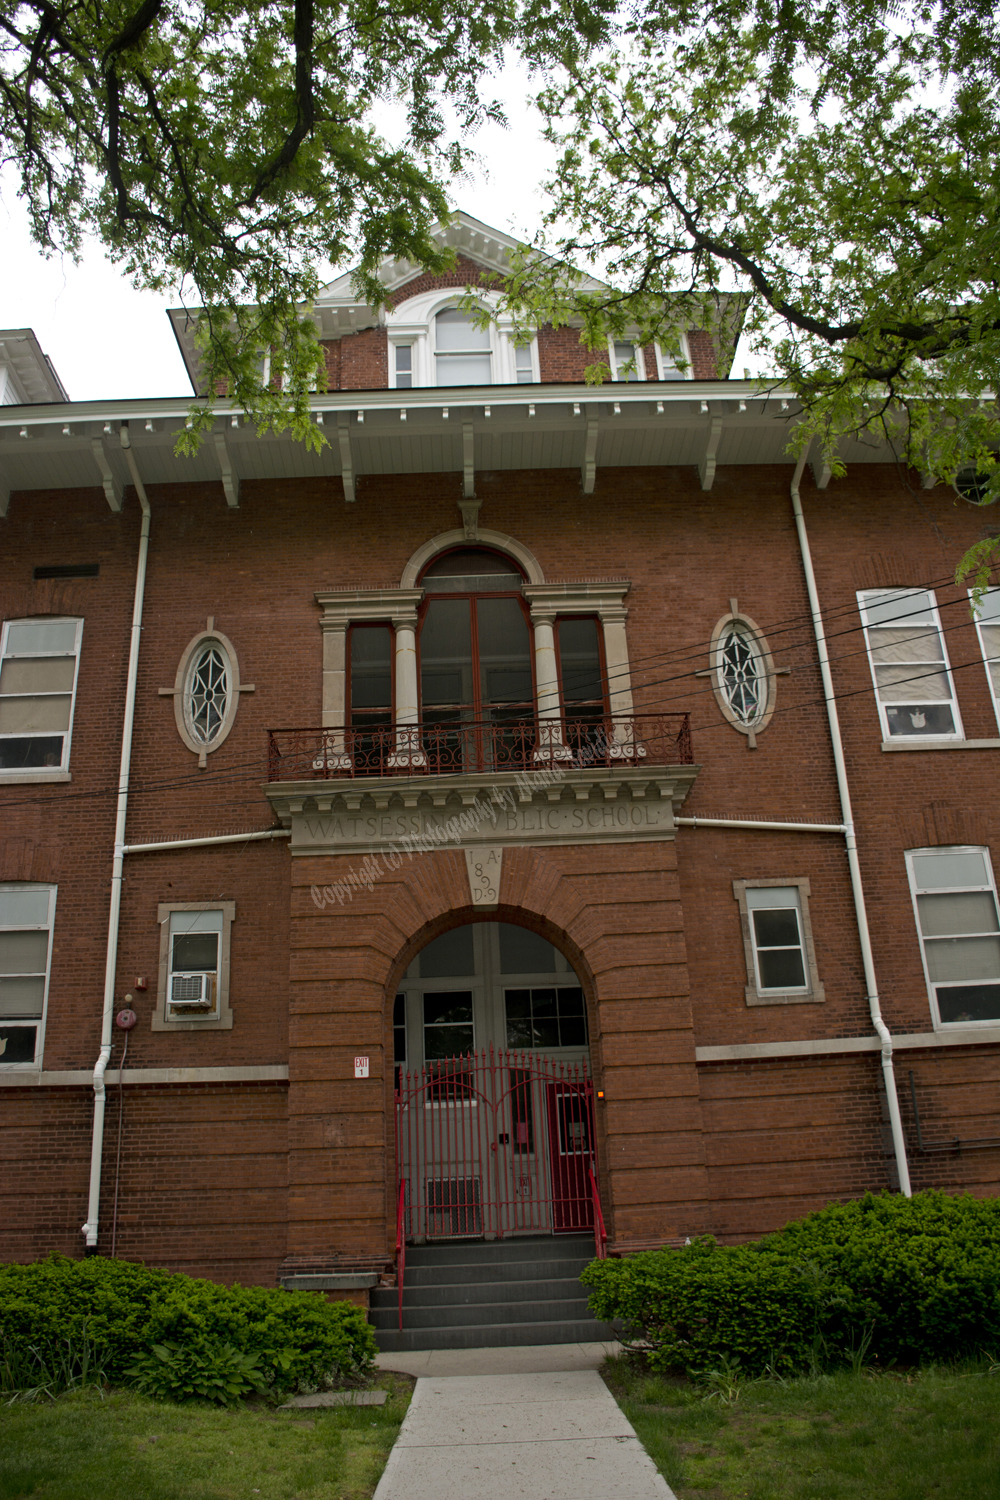 Watsessing Public School, Bloomfield, New Jersey